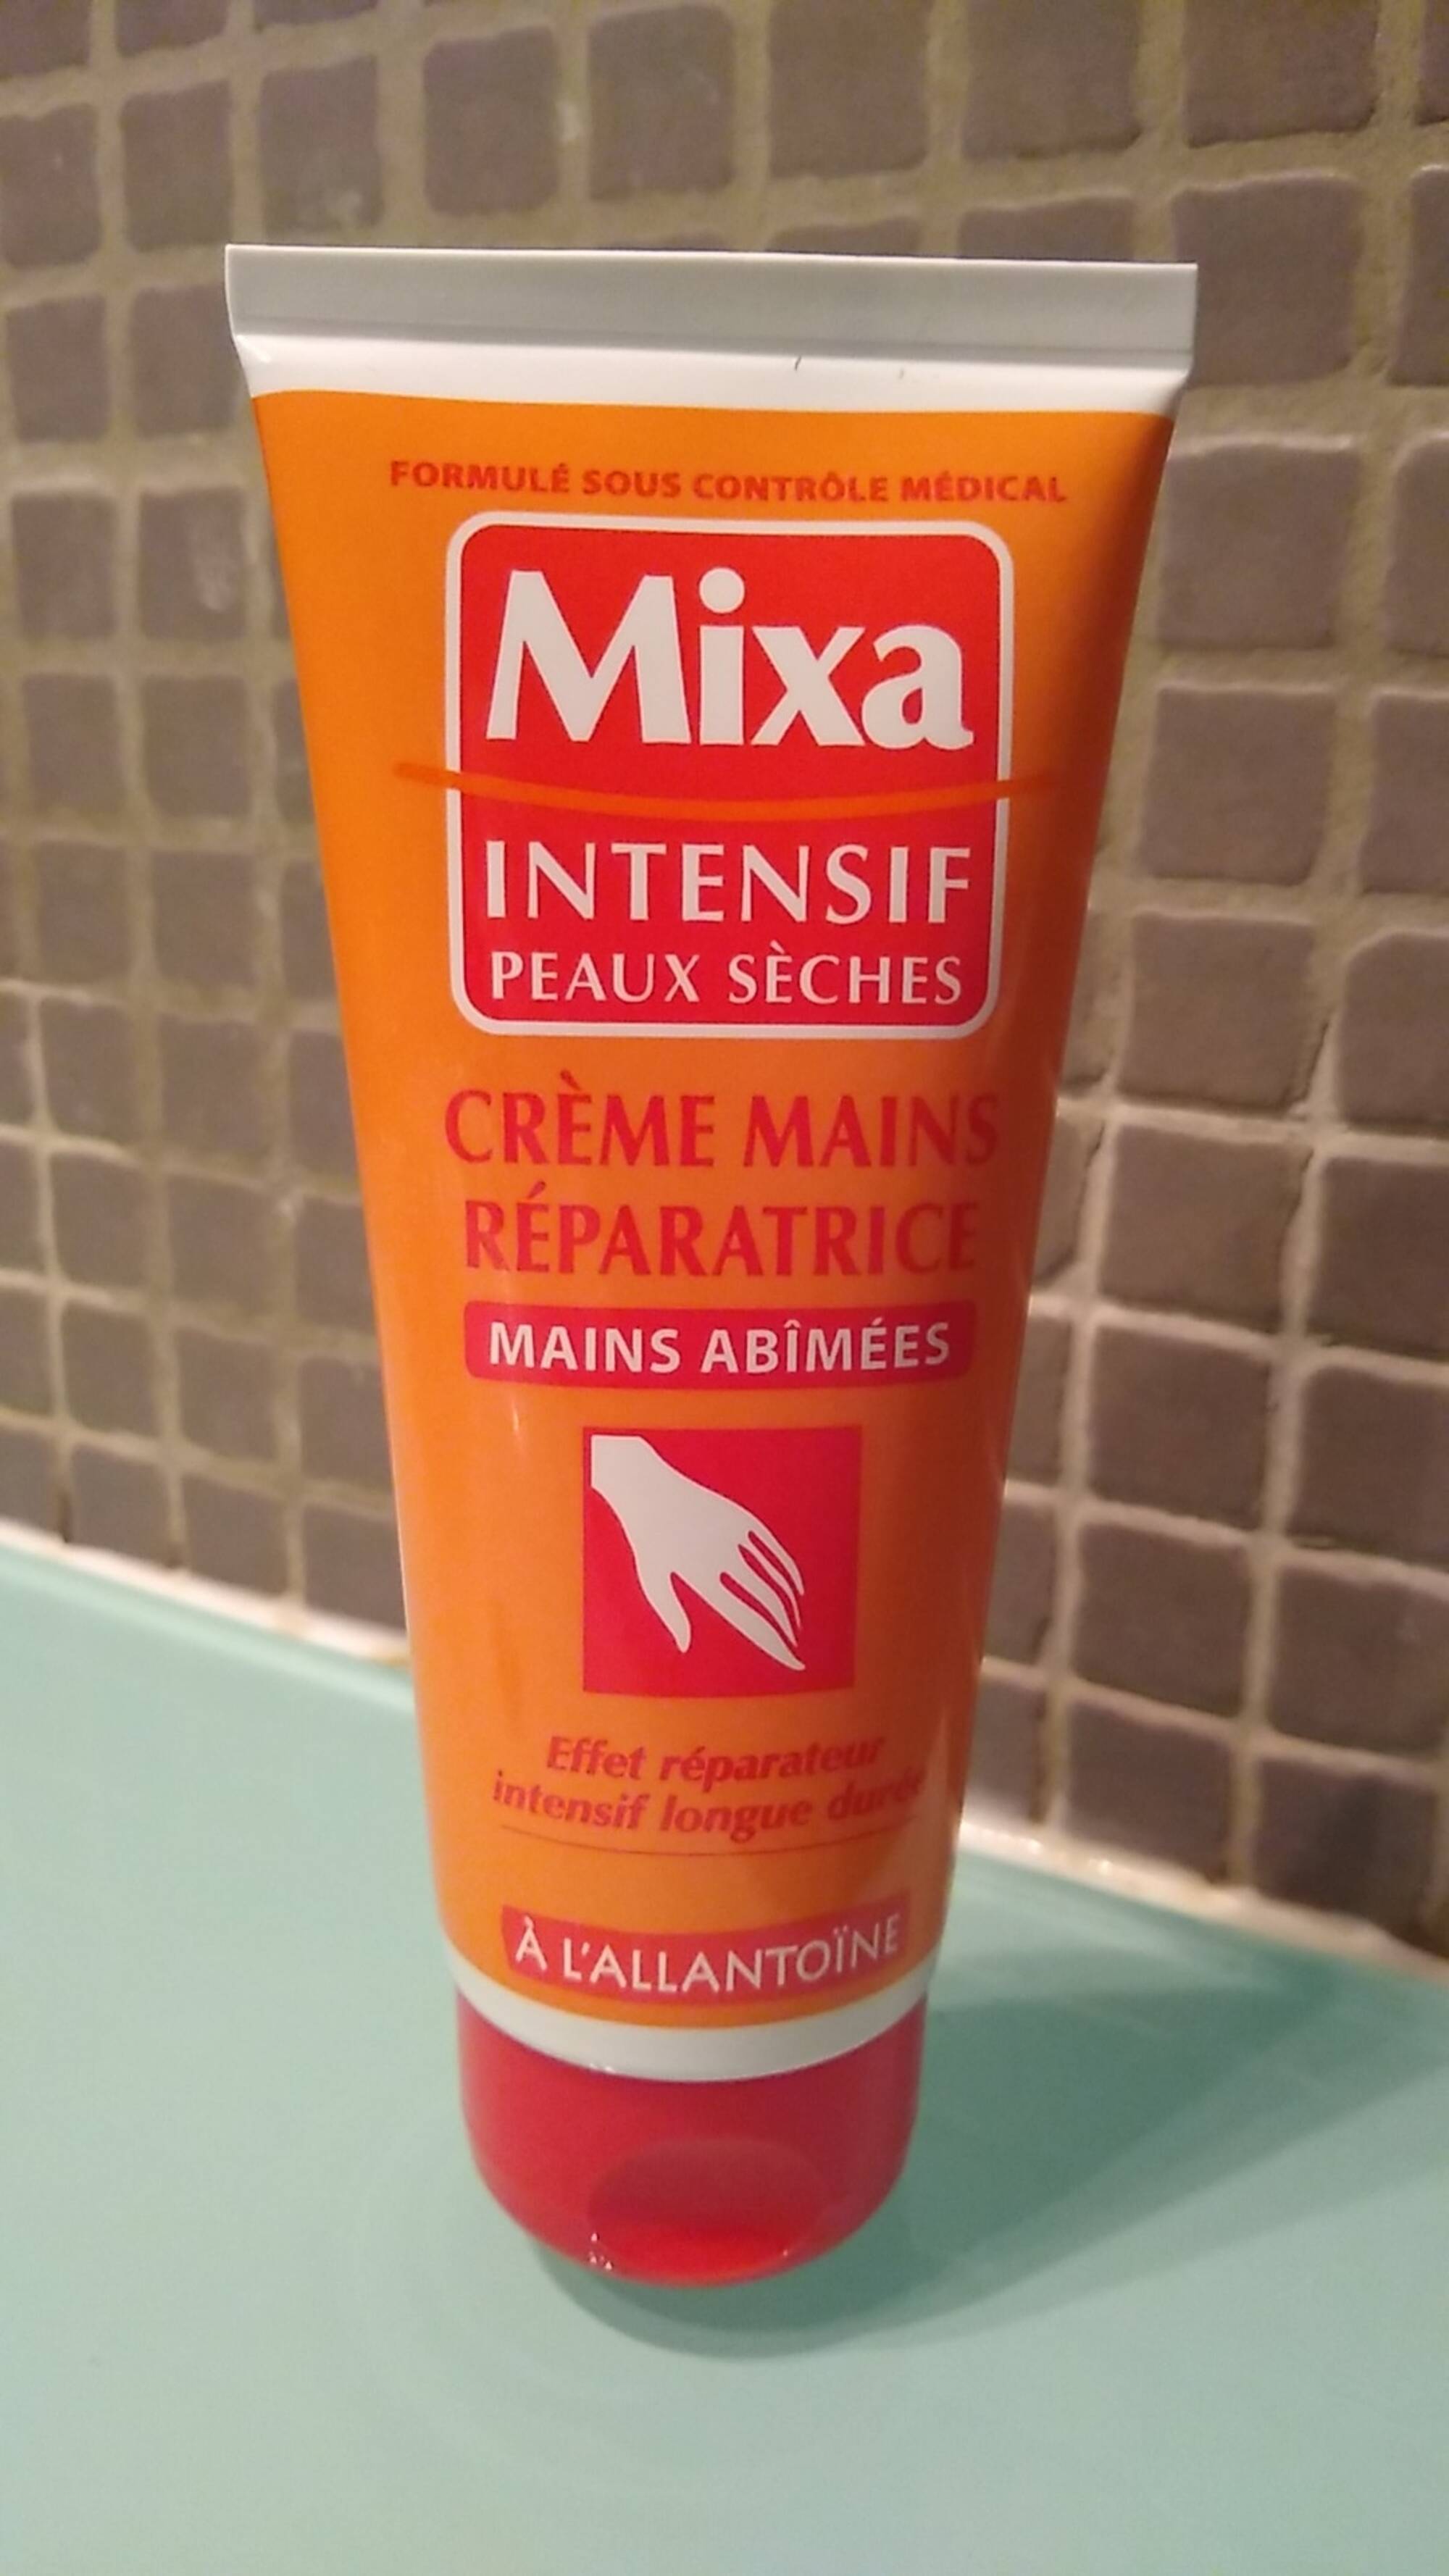 Crème Mains Réparatrice mains abîmées de Mixa